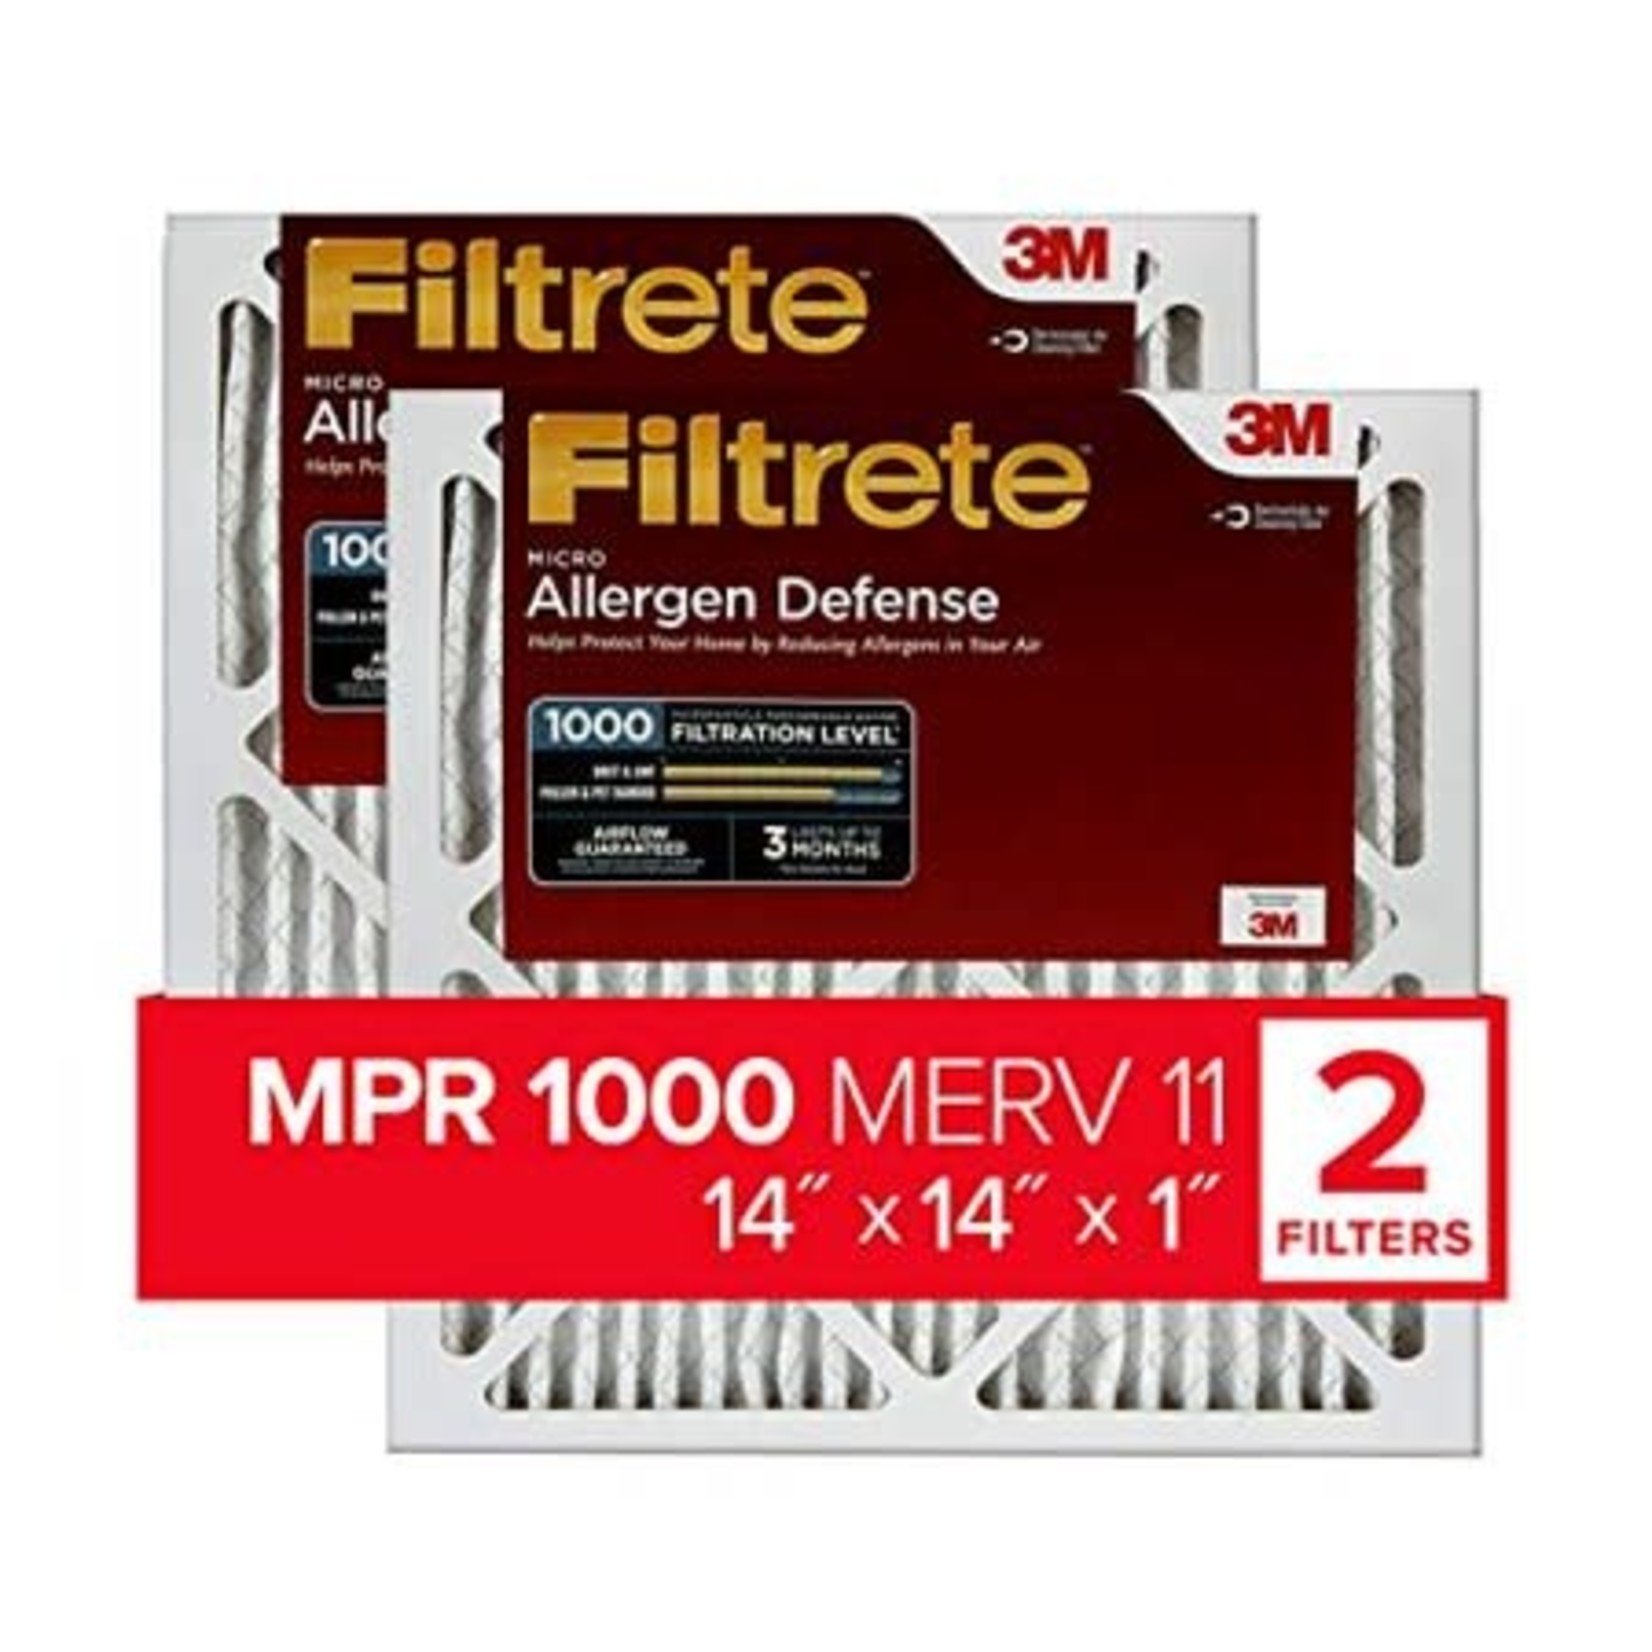 Filtrete AC Furnace Air Filter- 14x14x1 Merv 11- 2 Pack